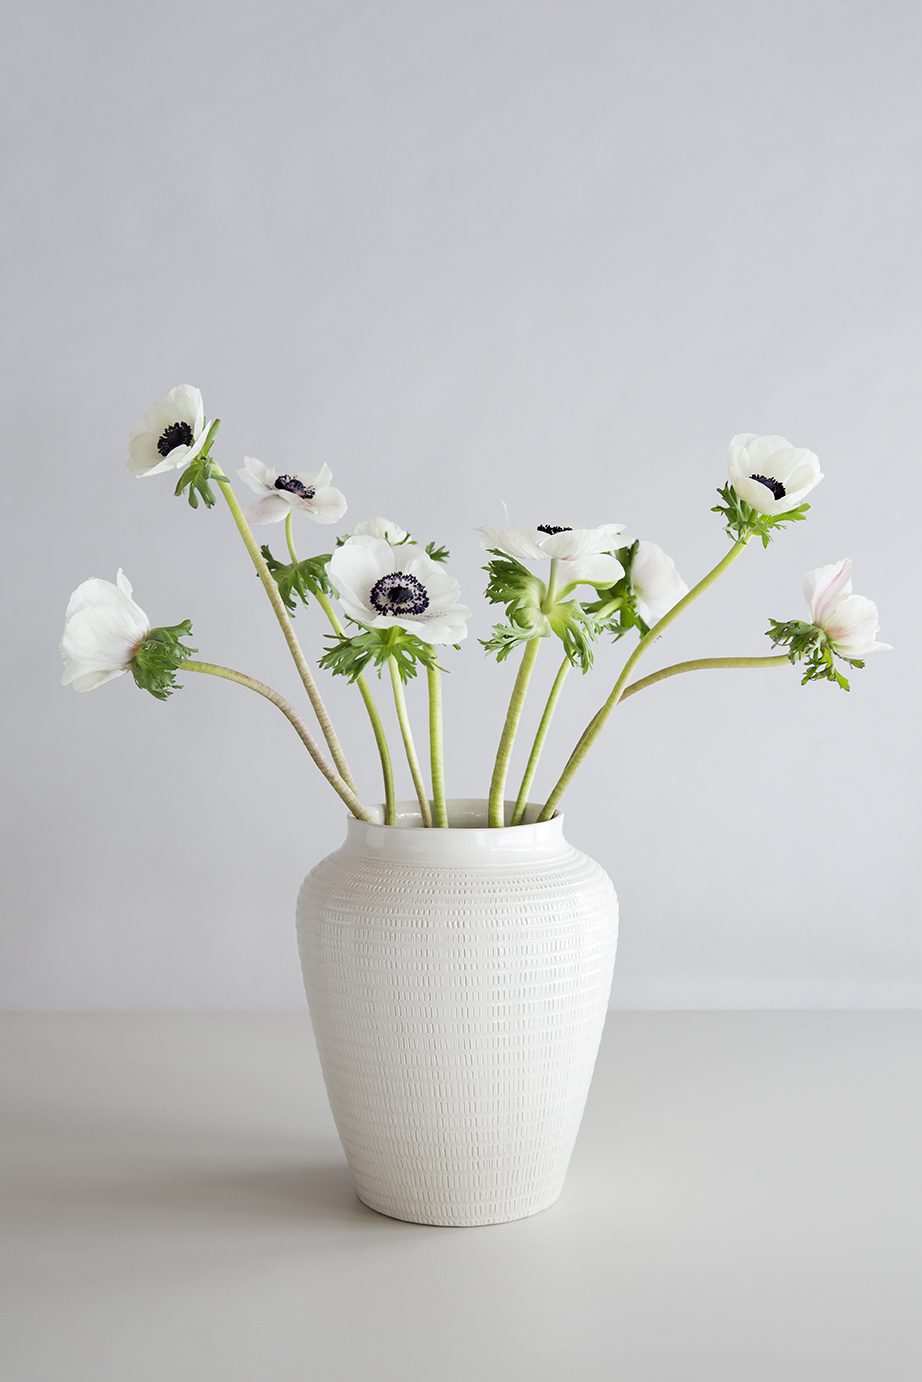 Large glazed white vase with white flowers.